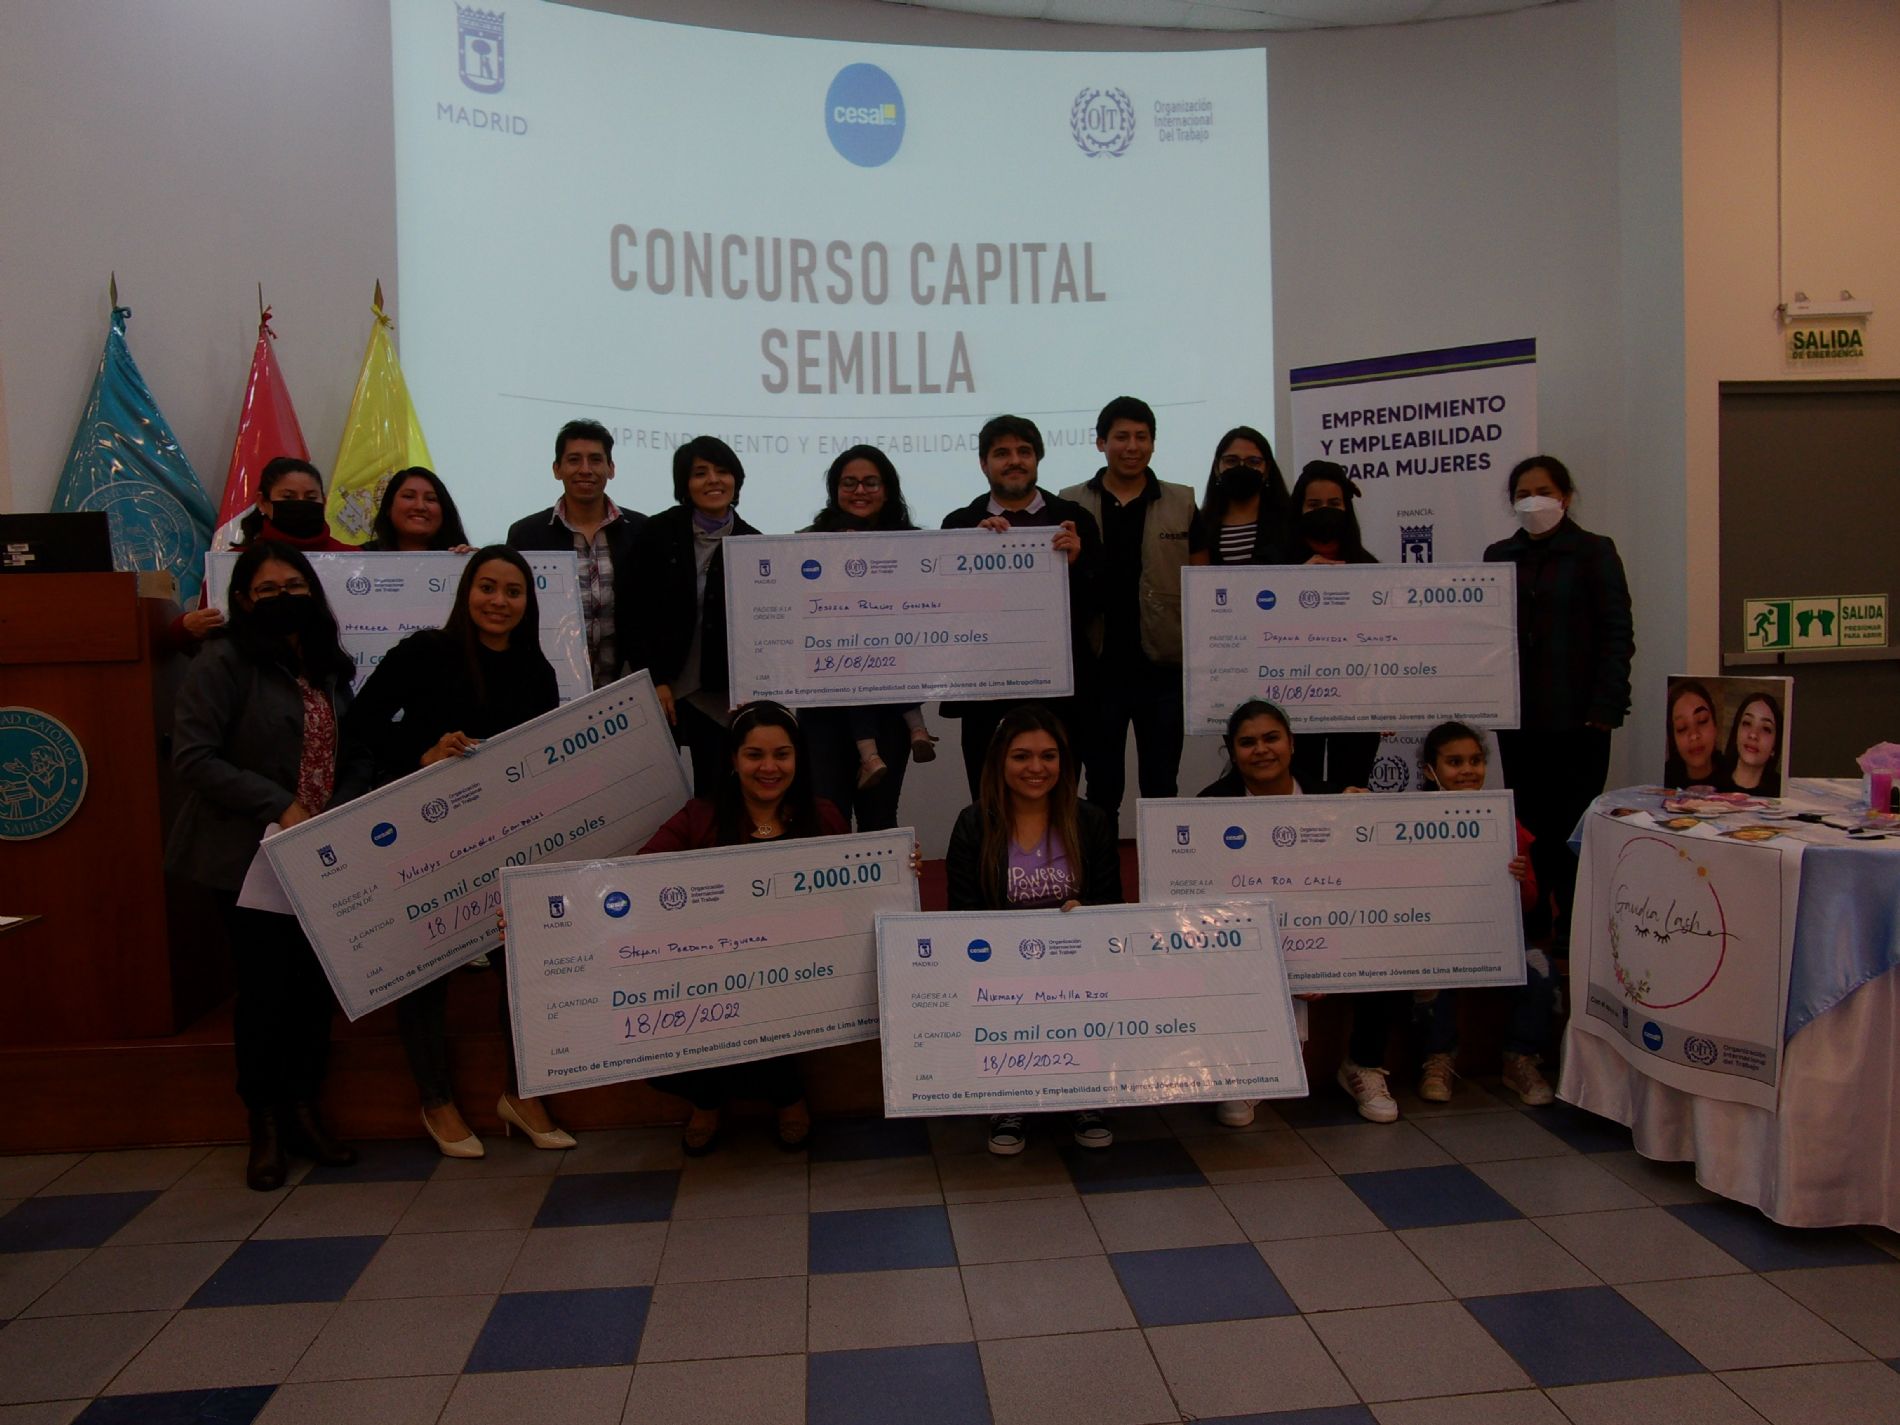 23 mujeres emprendedoras, peruanas y venezolanas, recibieron capital semilla para sus negocios en Lima (Per)